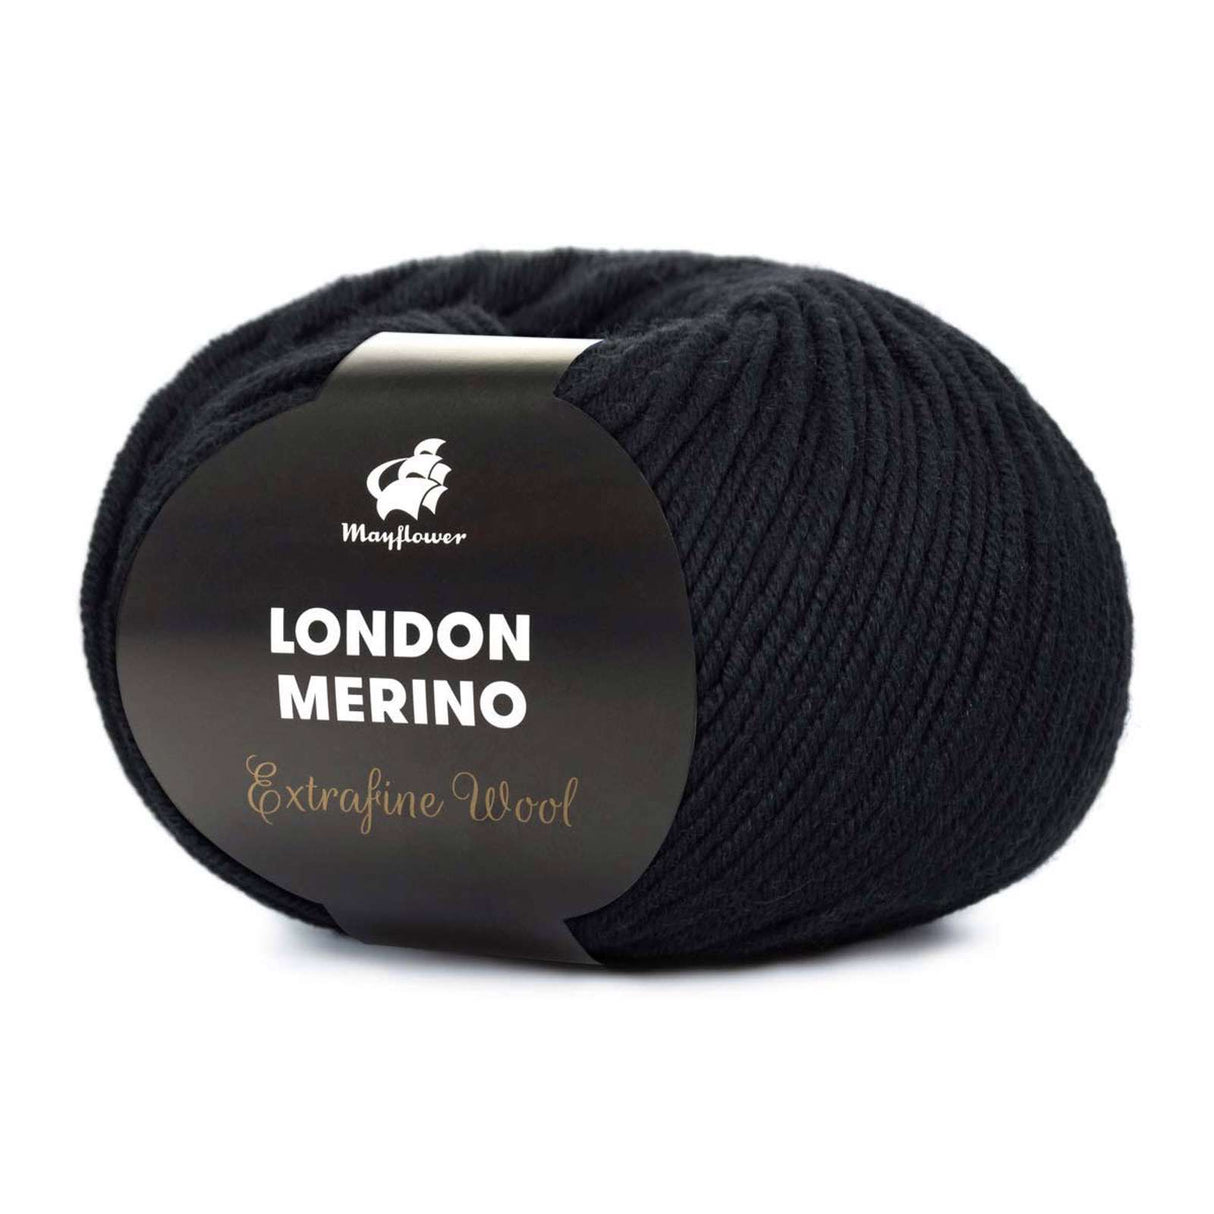 London Merino